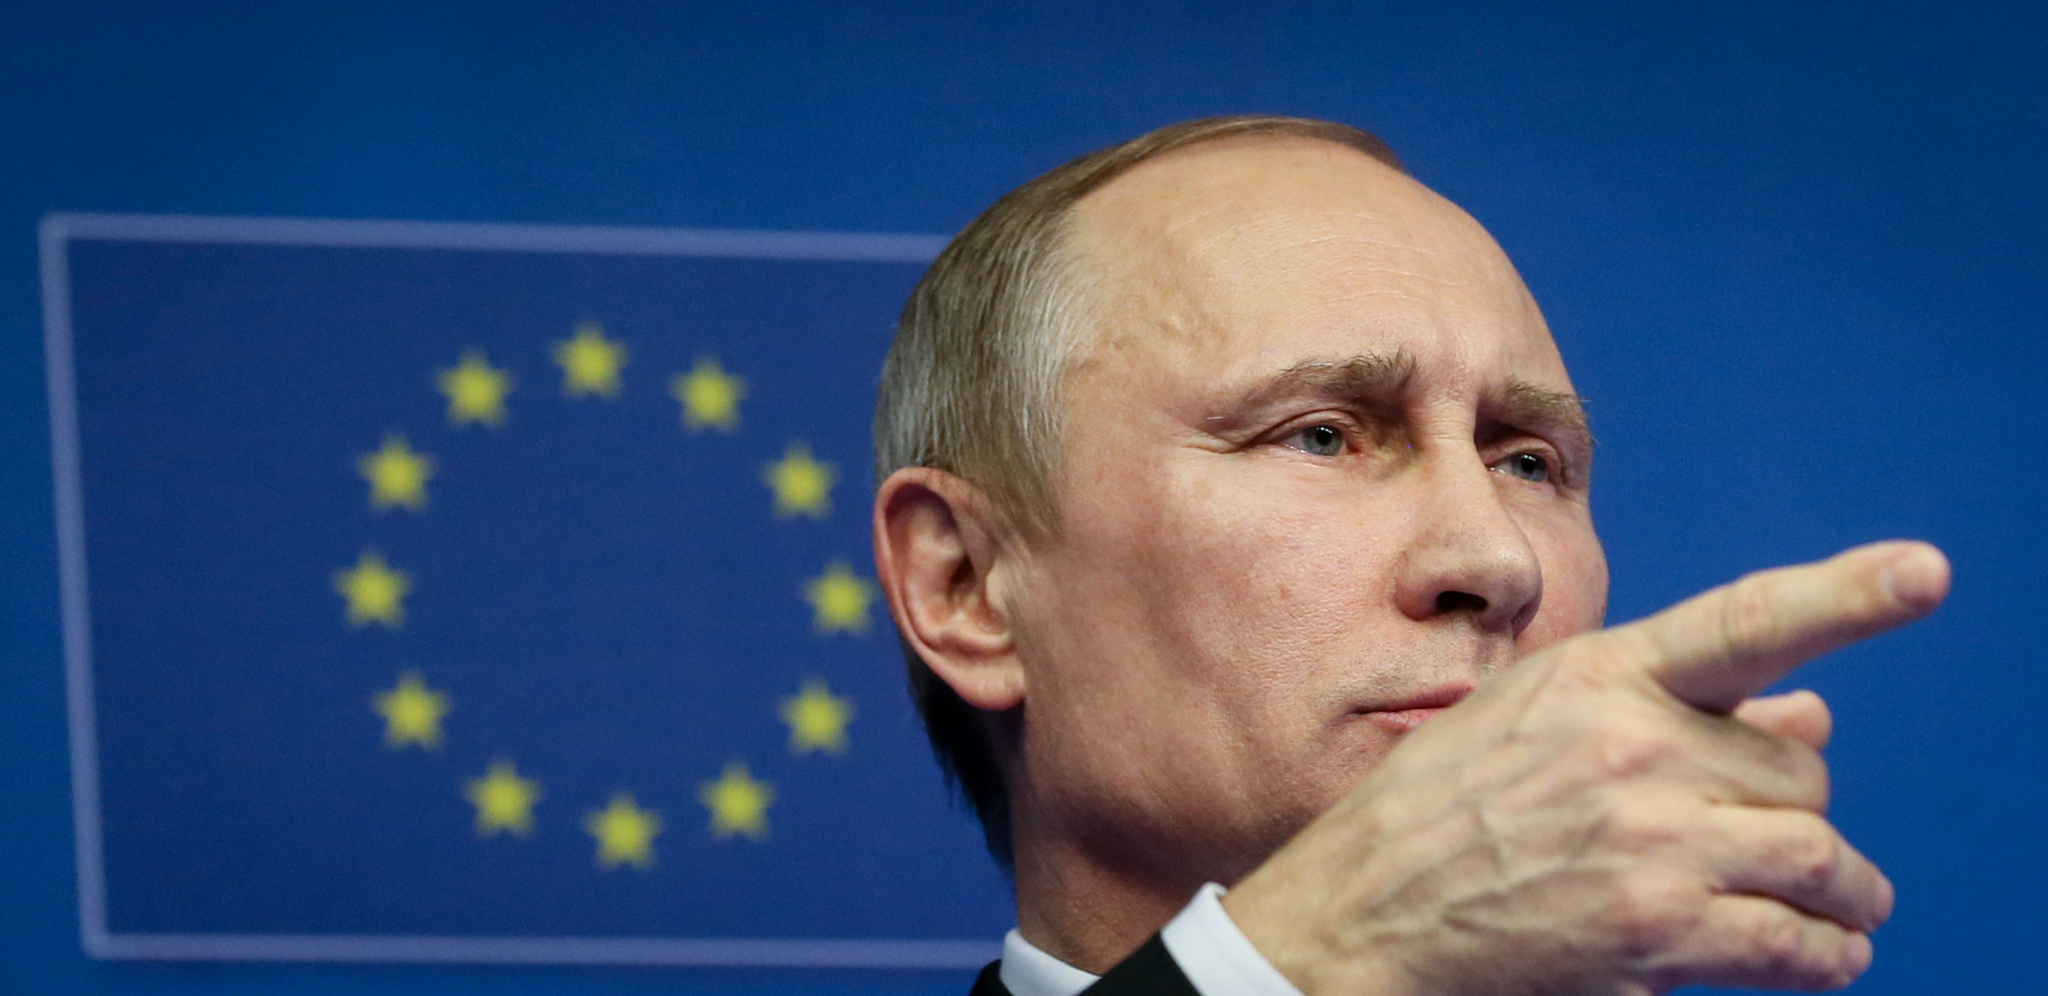 "MOGLI SMO DA GA POTOPIMO" Putin se oglasio o incidentu u Crnom moru, britanski razarač bio na nišanu!